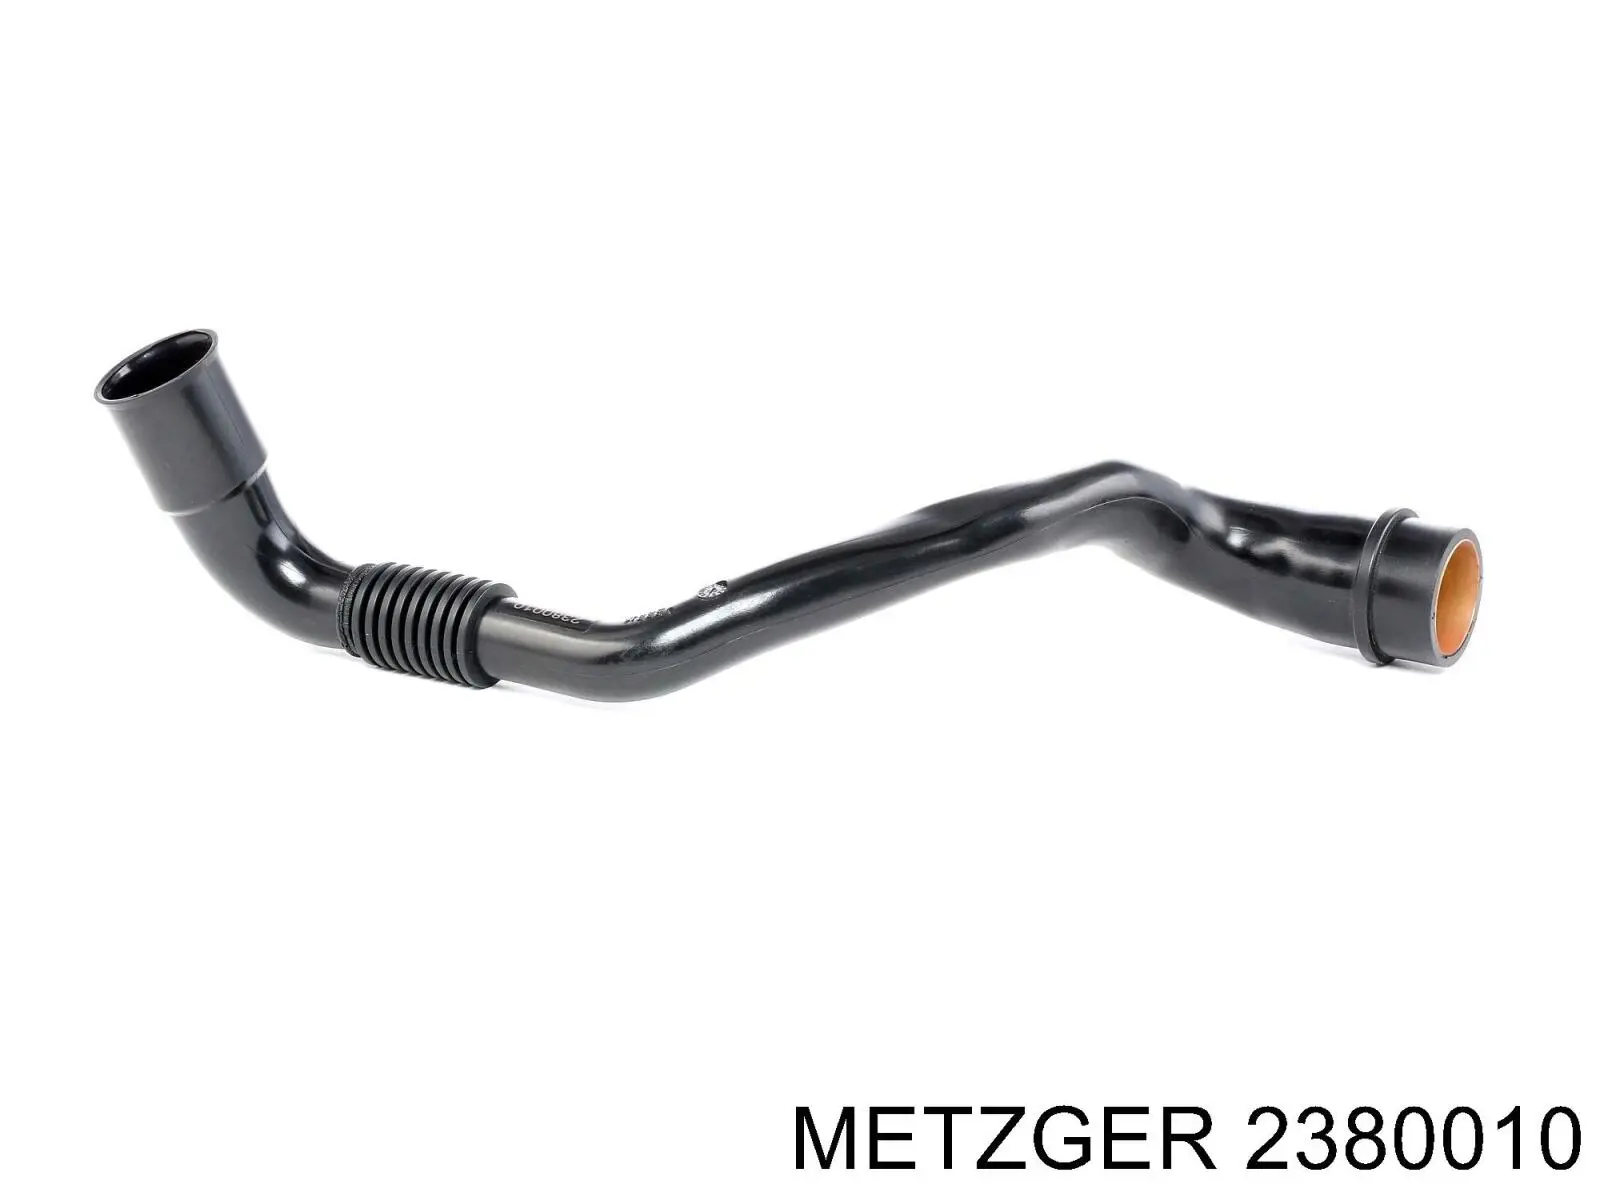 2380010 Metzger tubo de ventilacion del carter (separador de aceite)